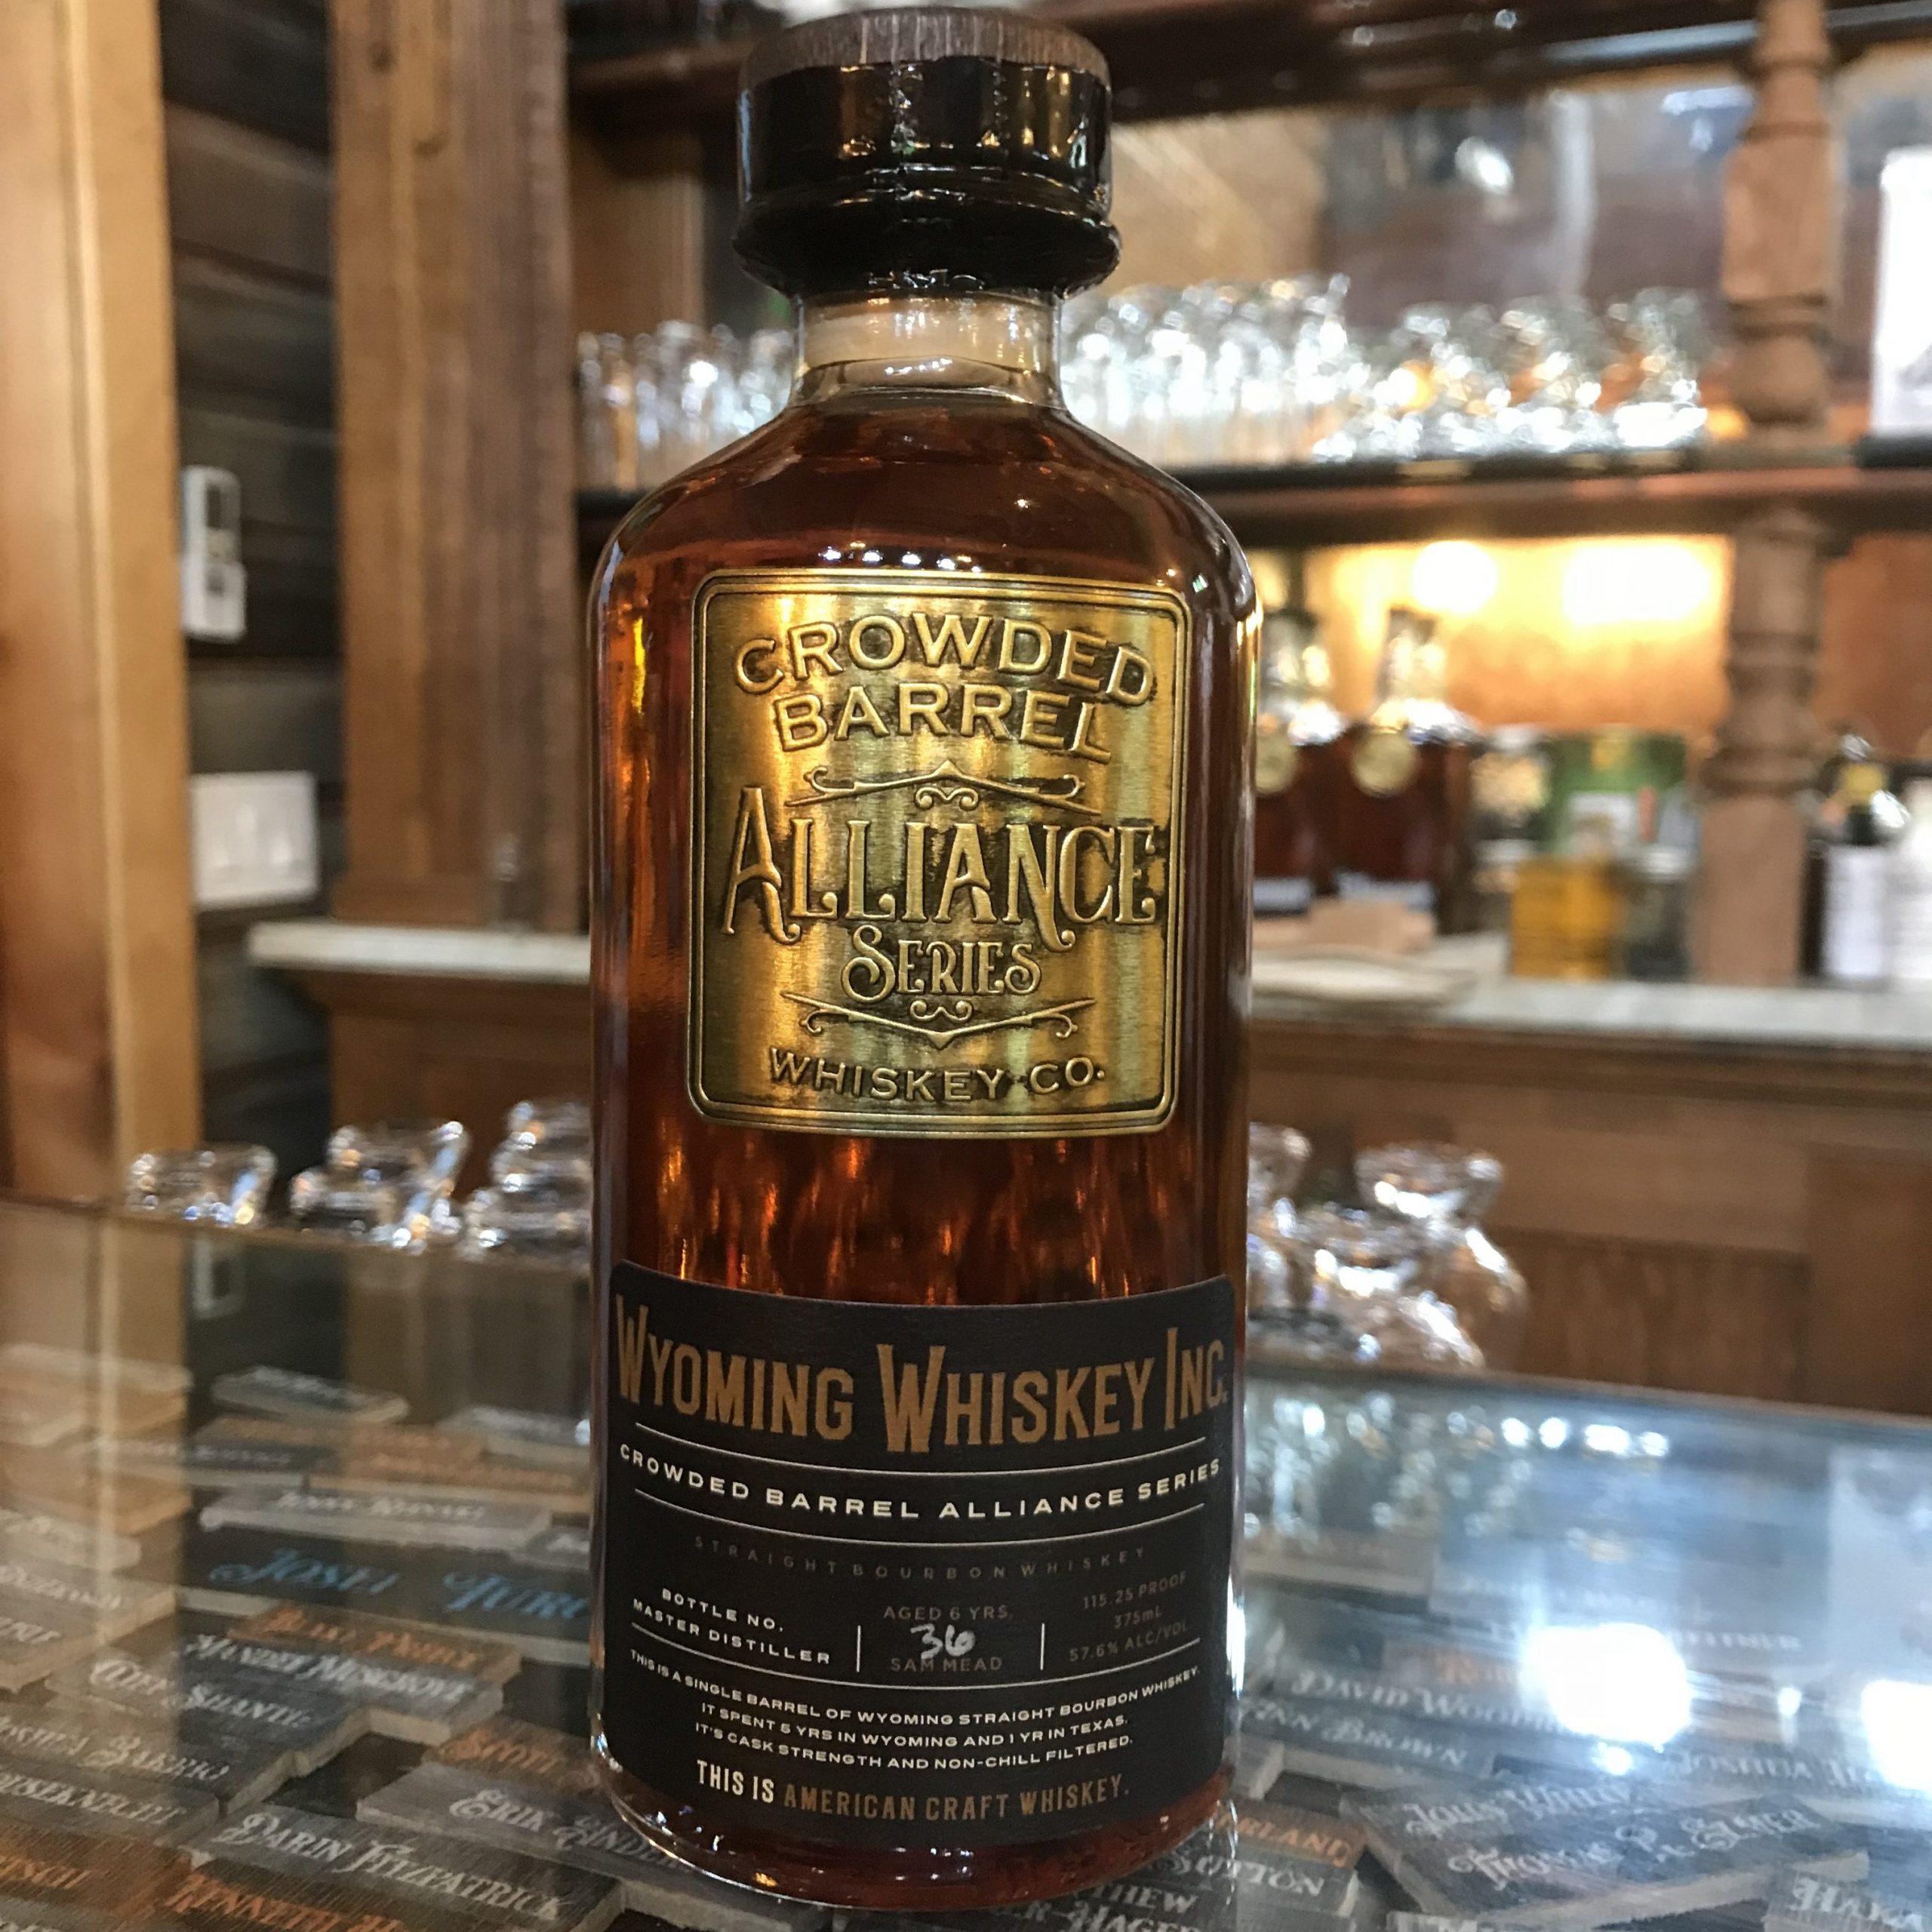 Wyoming Whiskey